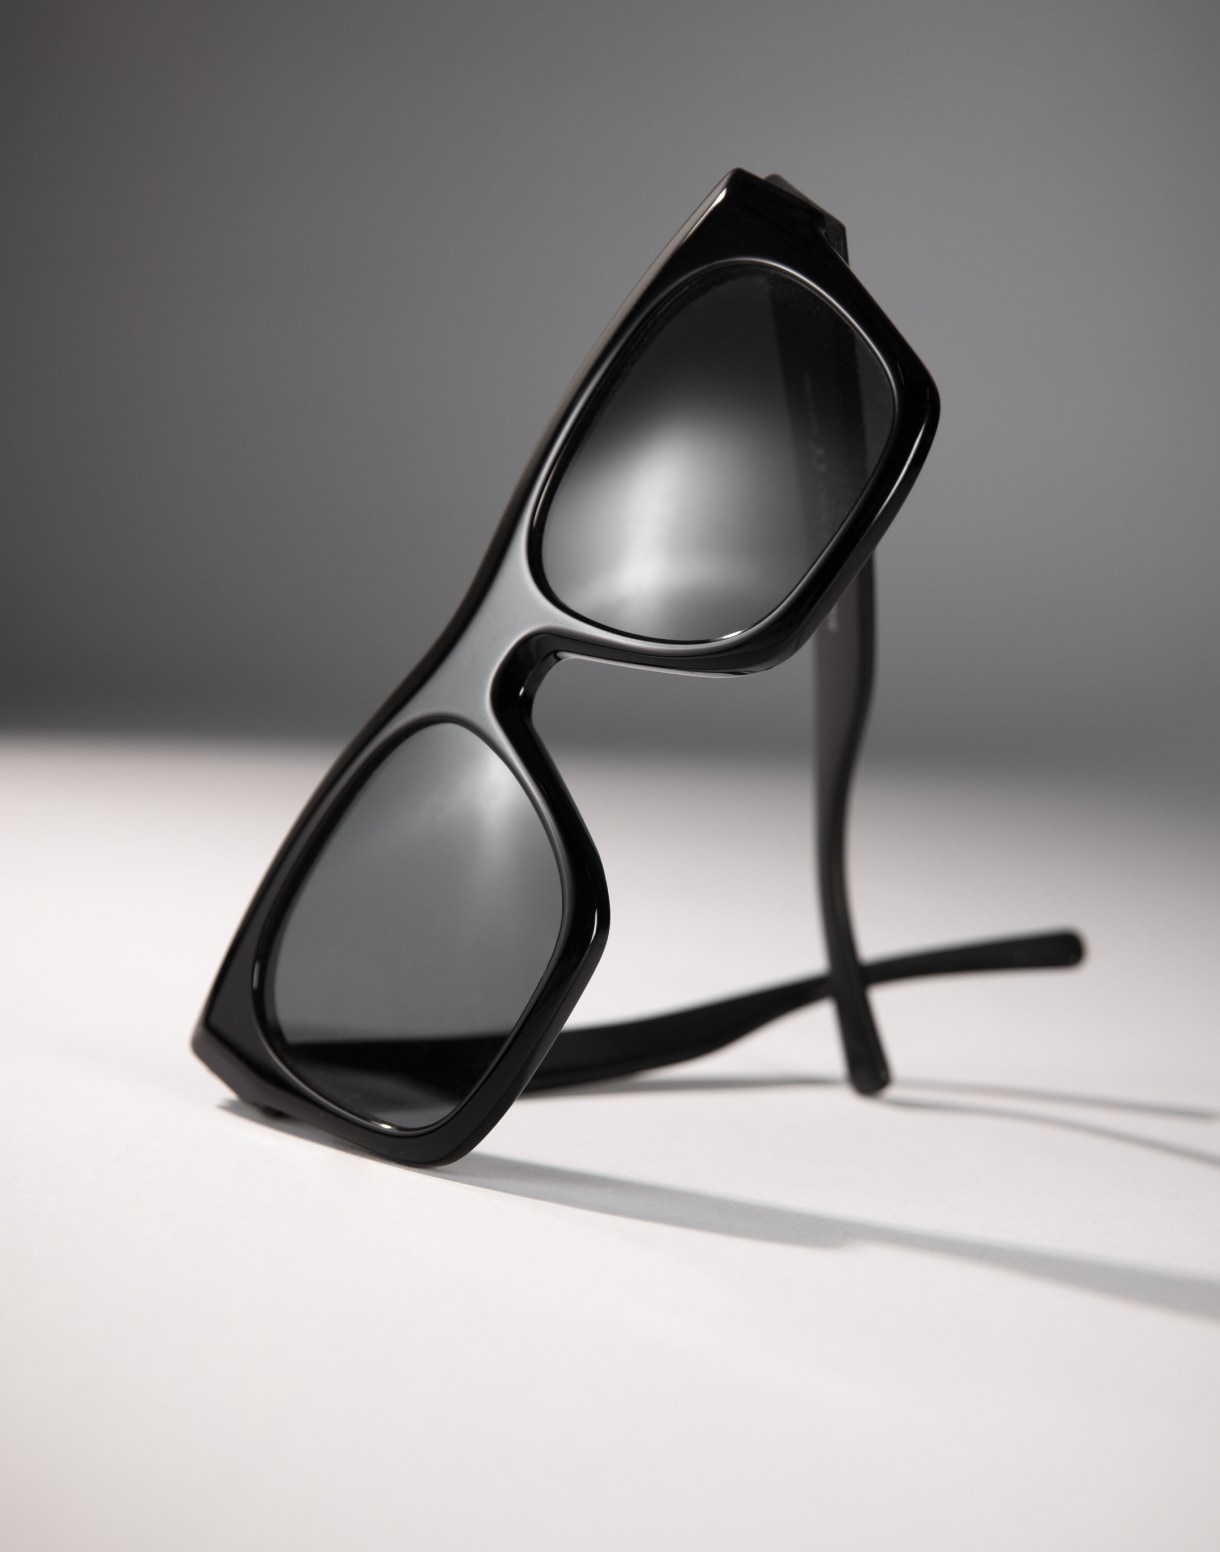 HAWKERS Gafas de sol Black Wine FELINE para mujer, femenino. Proteccion  UV400. Producto oficial diseñado en España